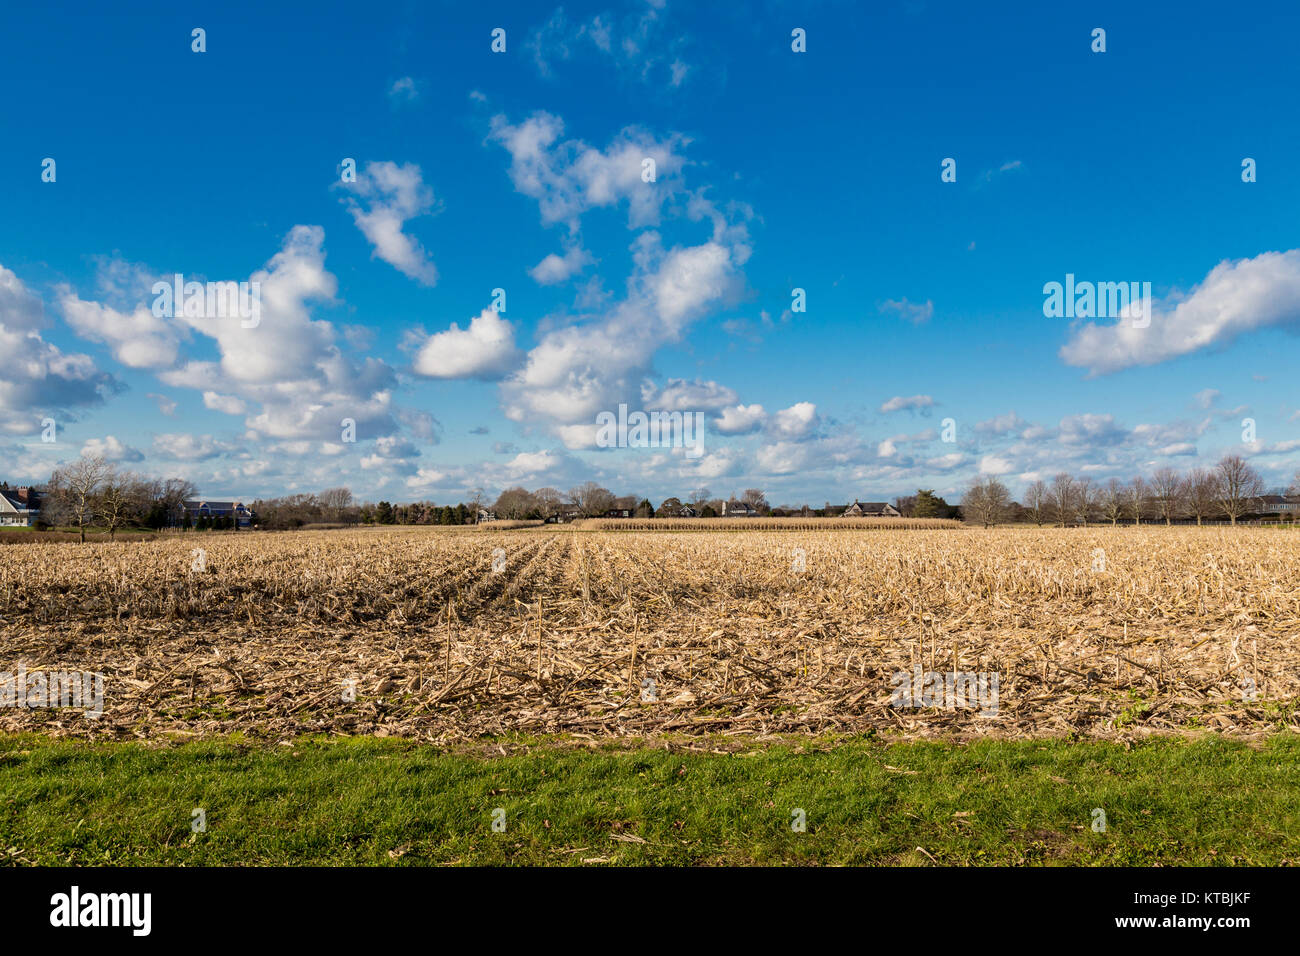 corn field in east hampton, ny Stock Photo